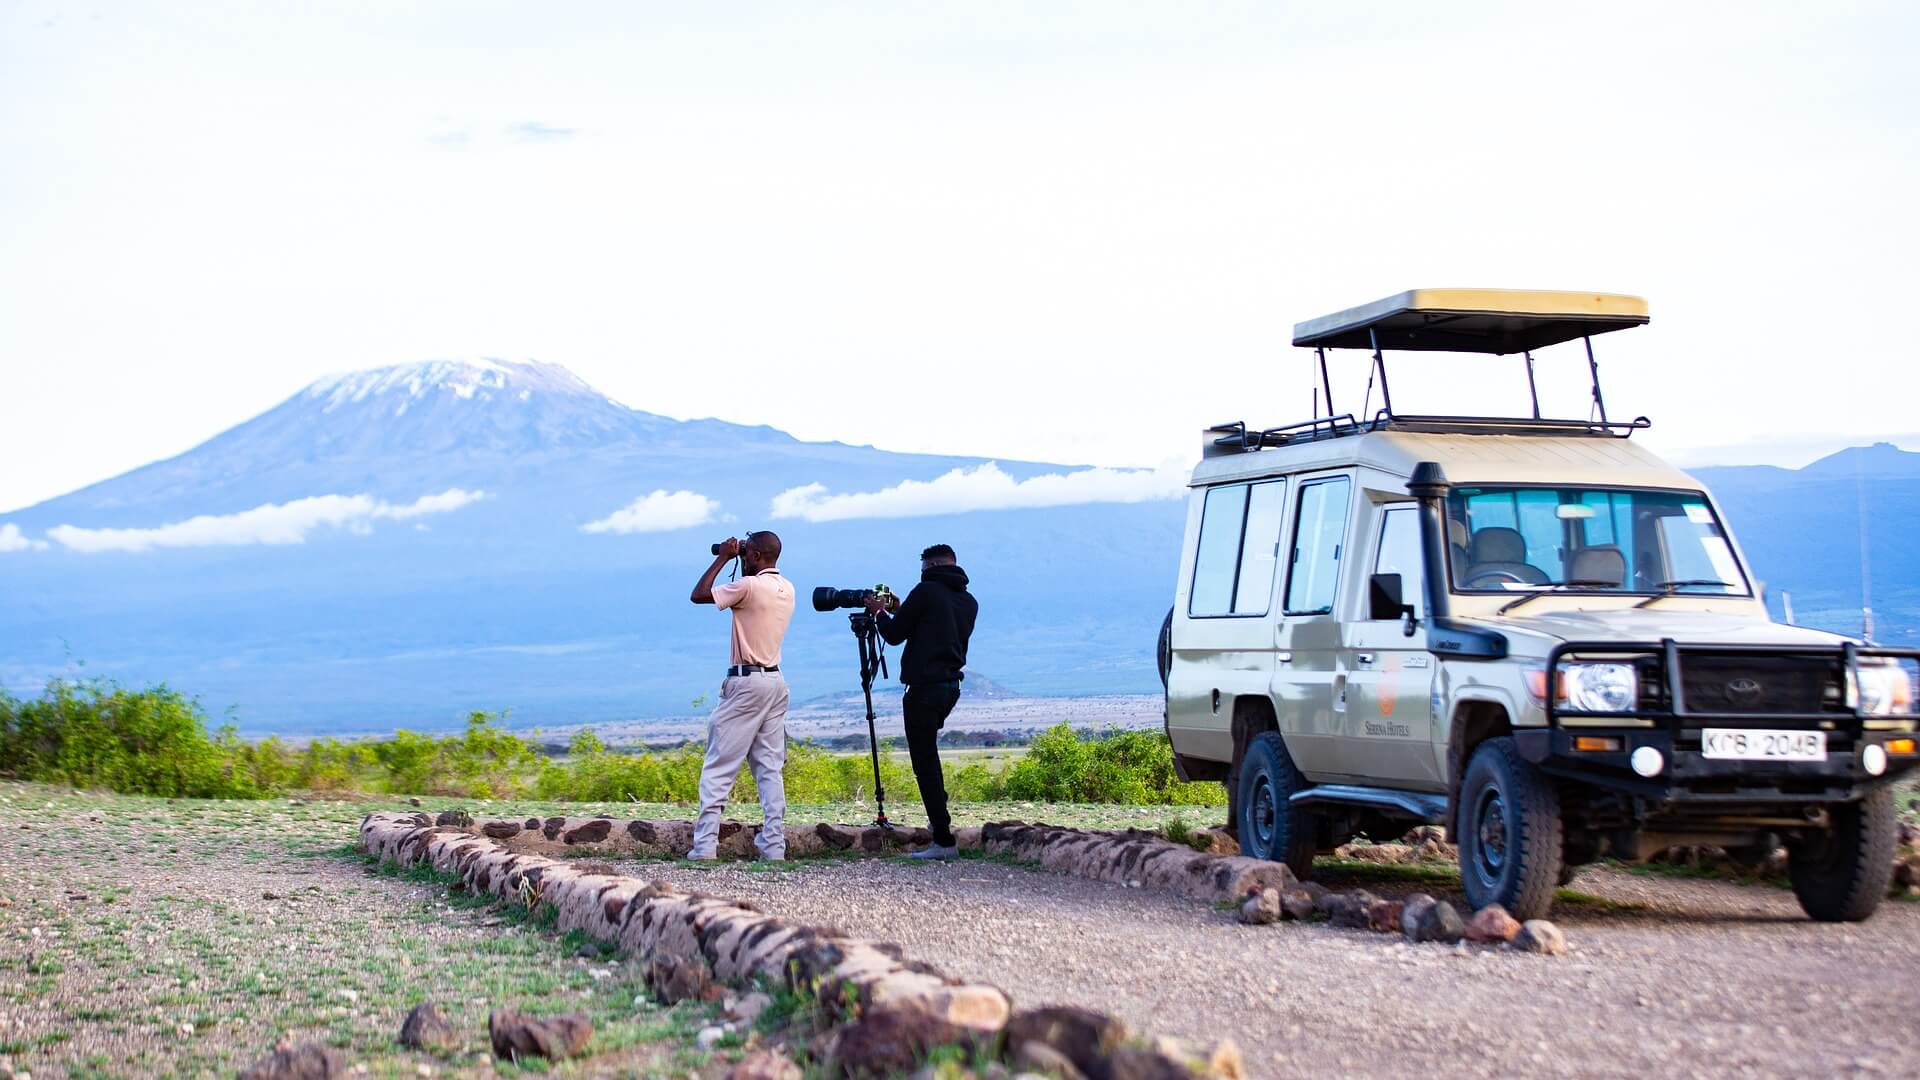 Amboseli day trip with Kifaru Discover Safaris